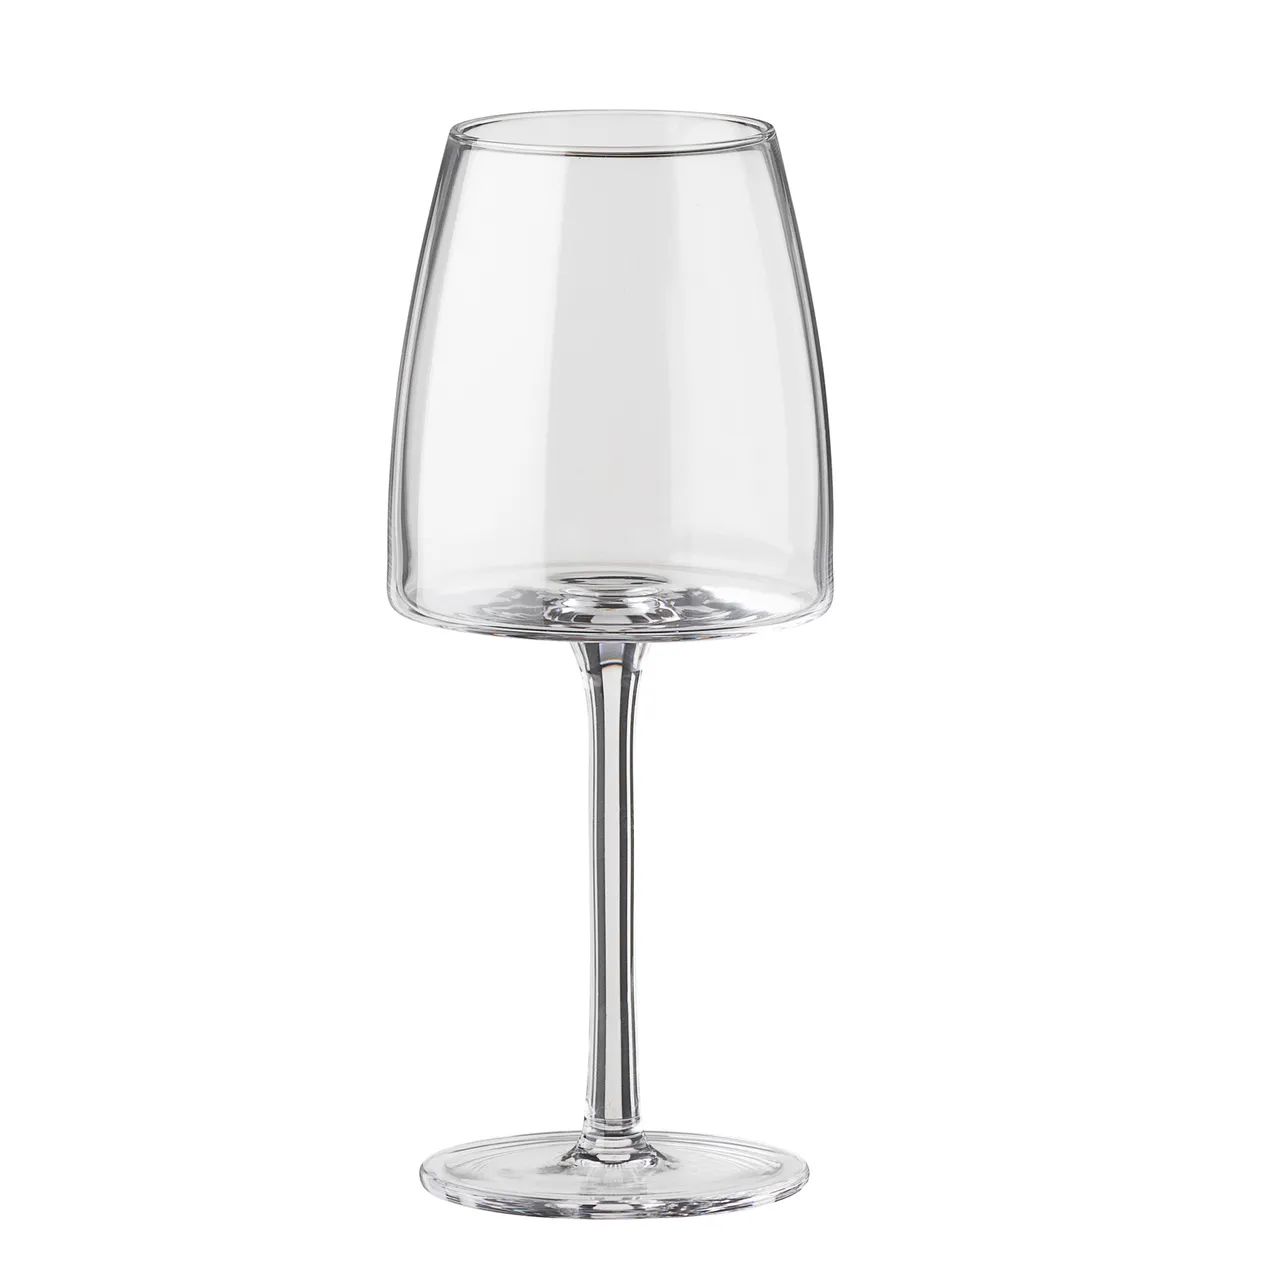 Land Luminans Begrænse Køb SINNERUP Classy hvidvinsglas 4 stk. lige her! | Lækker kvalitet |  Hurtig fragt!